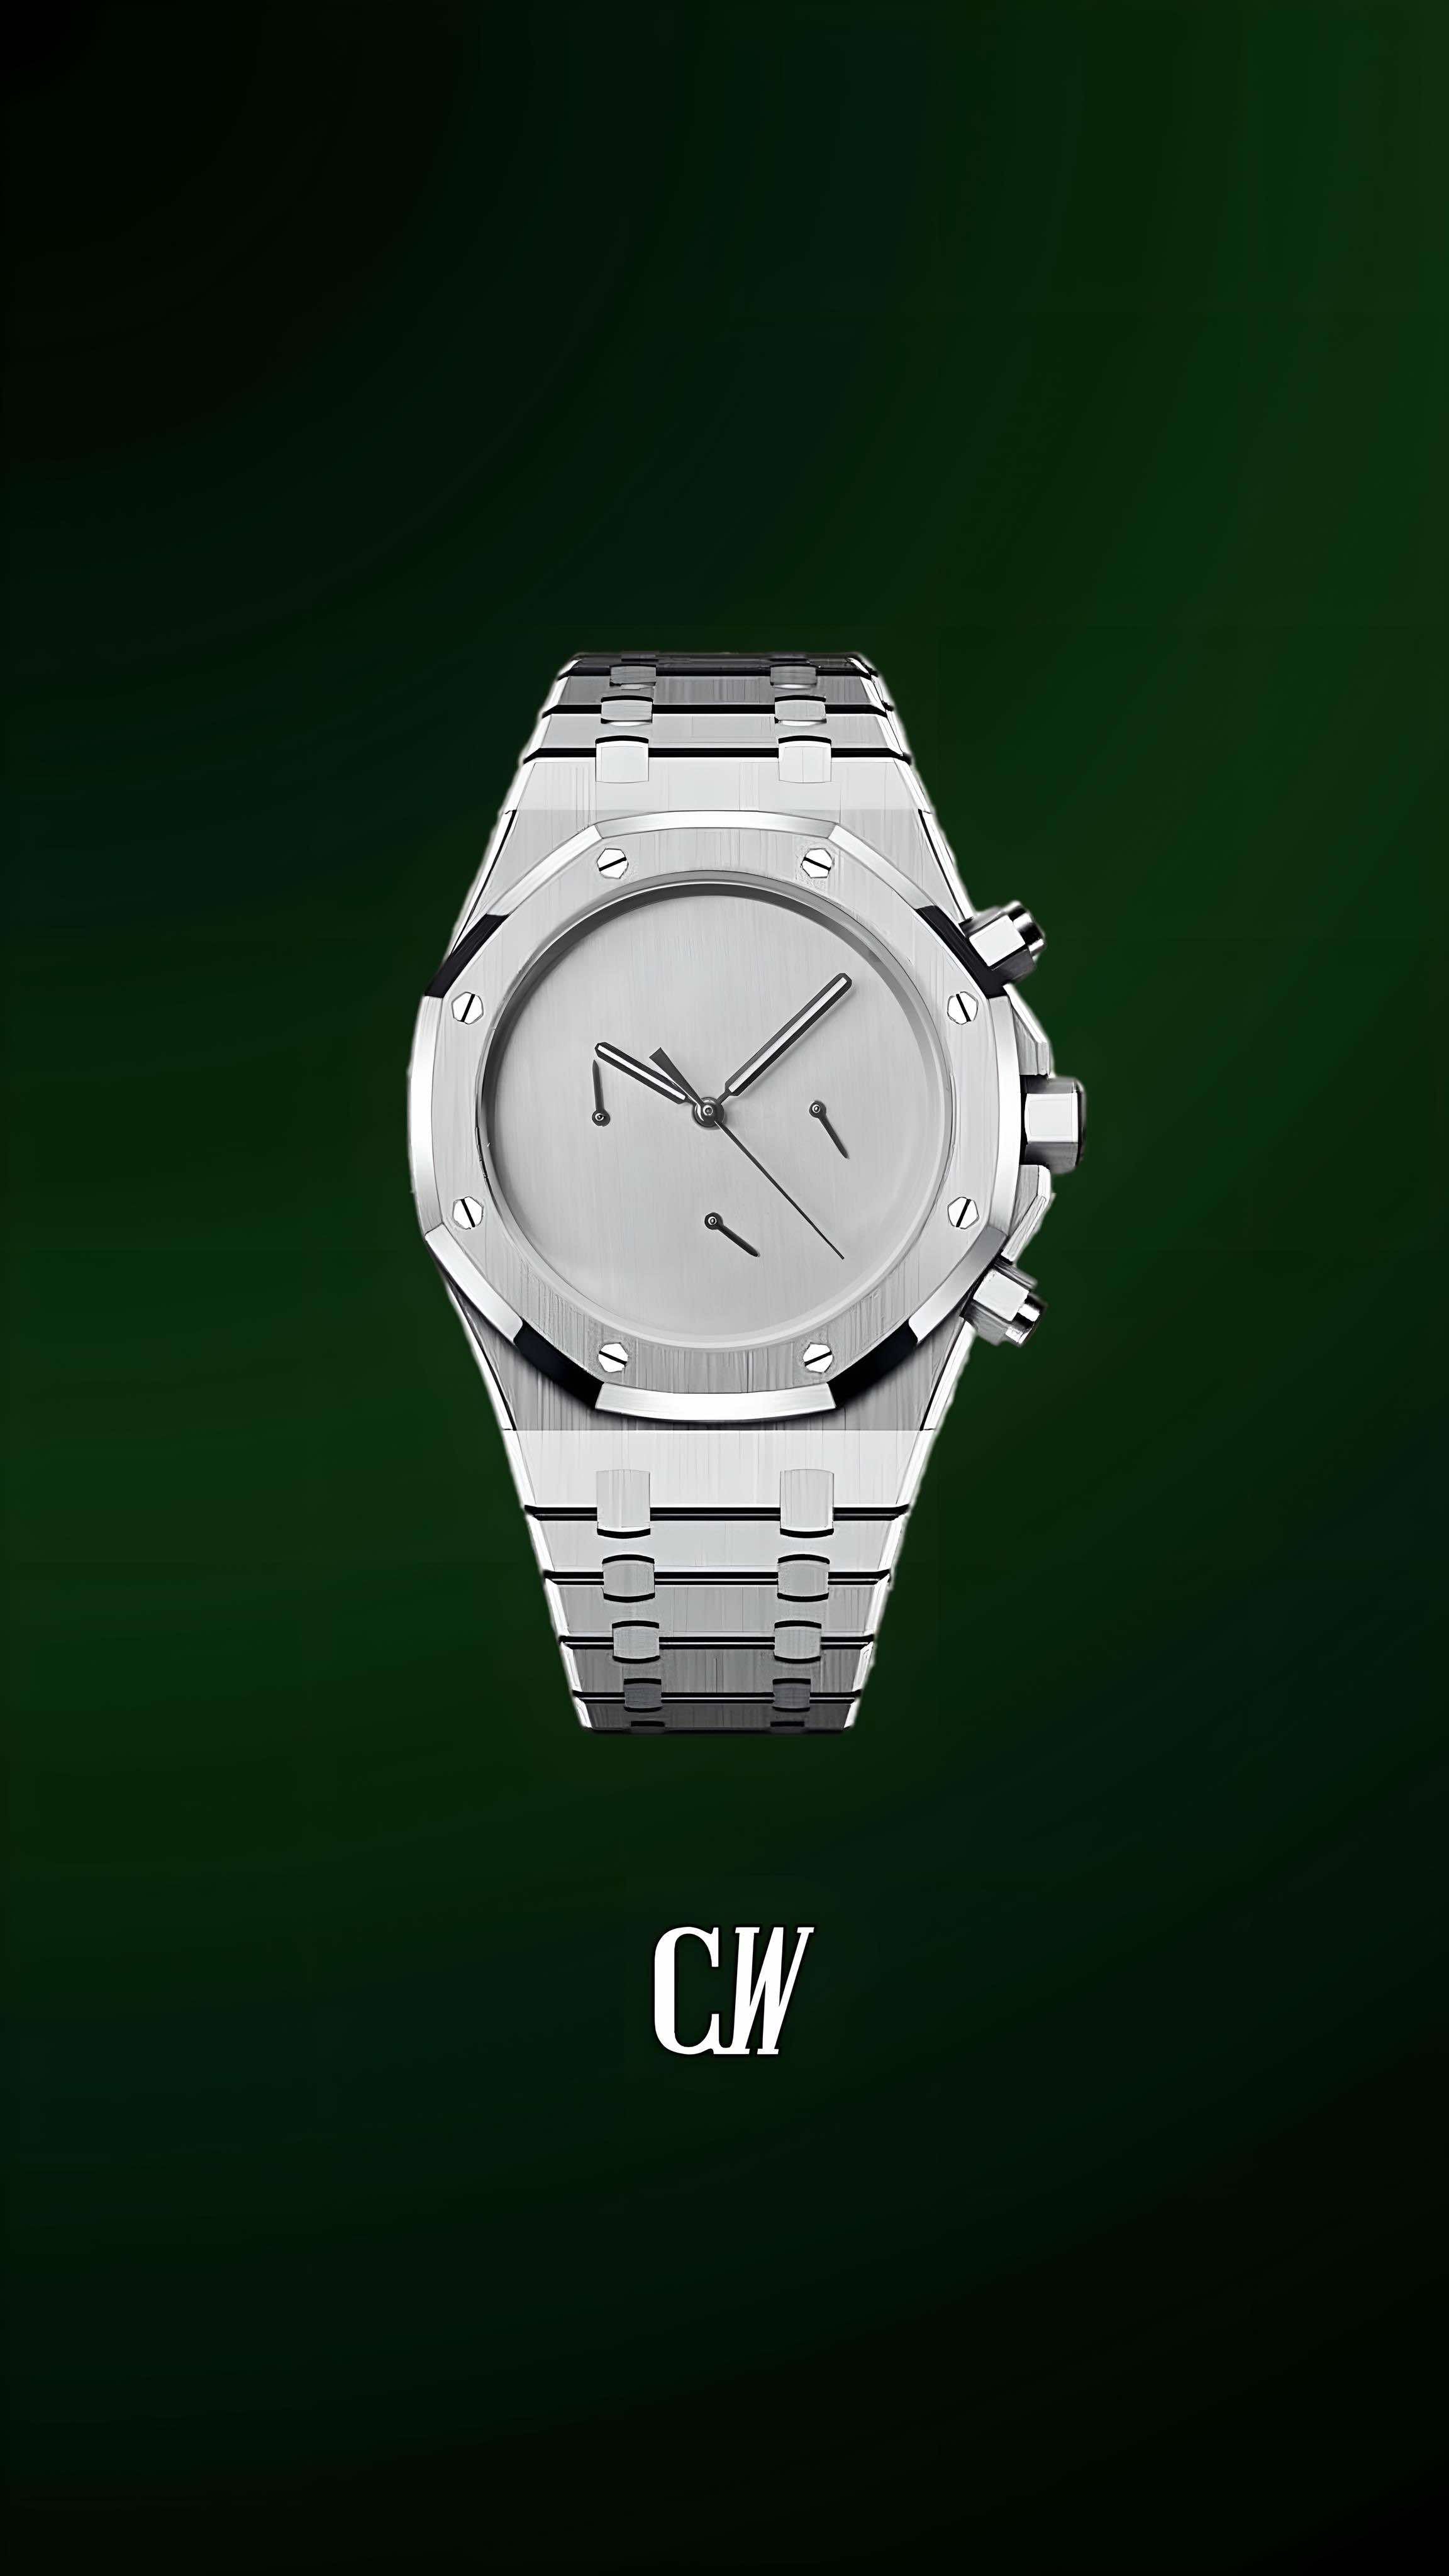 Mod Royal Seiko-oak chronograph 'Alyx style' watch